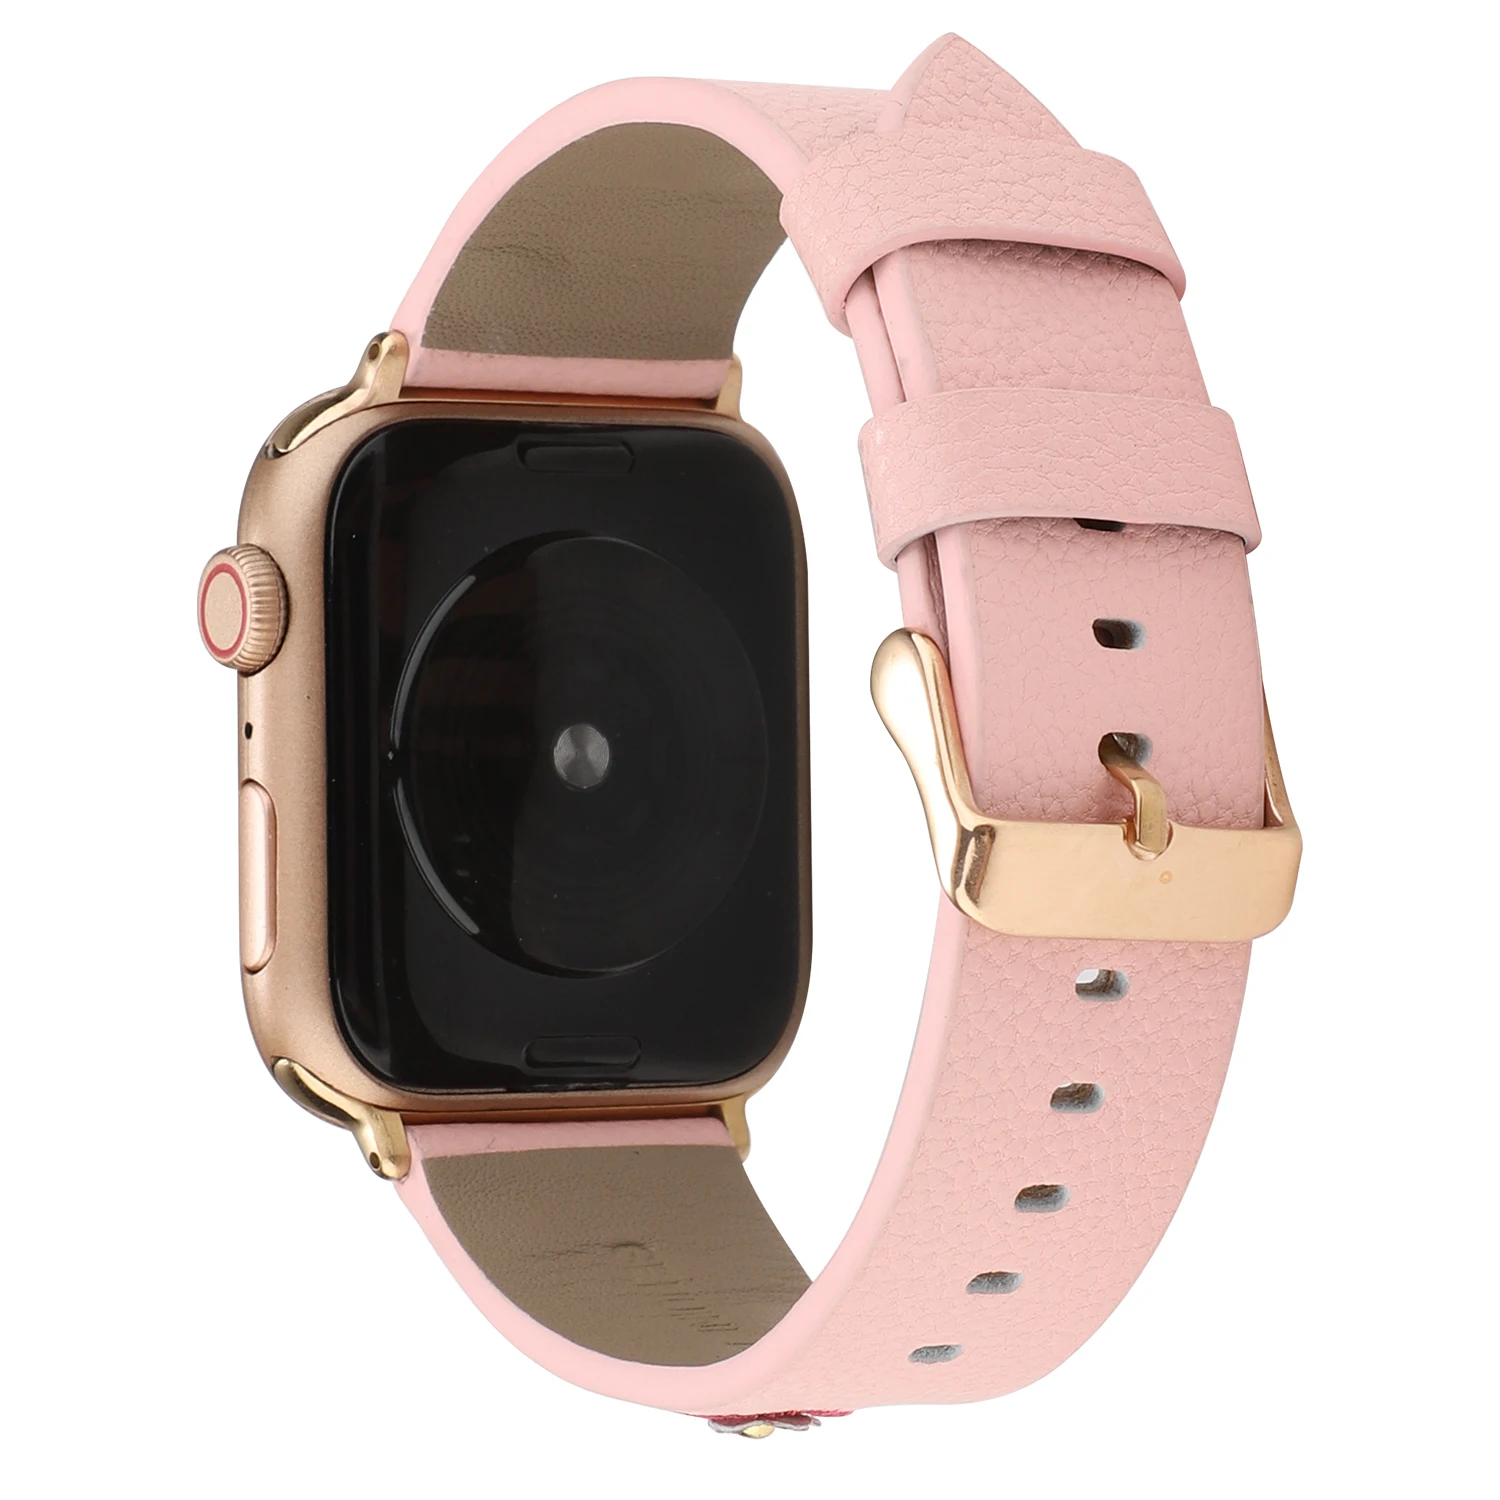 Вышивка кожаный ремешок для часов для apple watch серии 1, 2, 3, ремешок 42/38 мм браслет для наручных часов iwatch, ремешок correa apple watch 5 4 44/40 мм